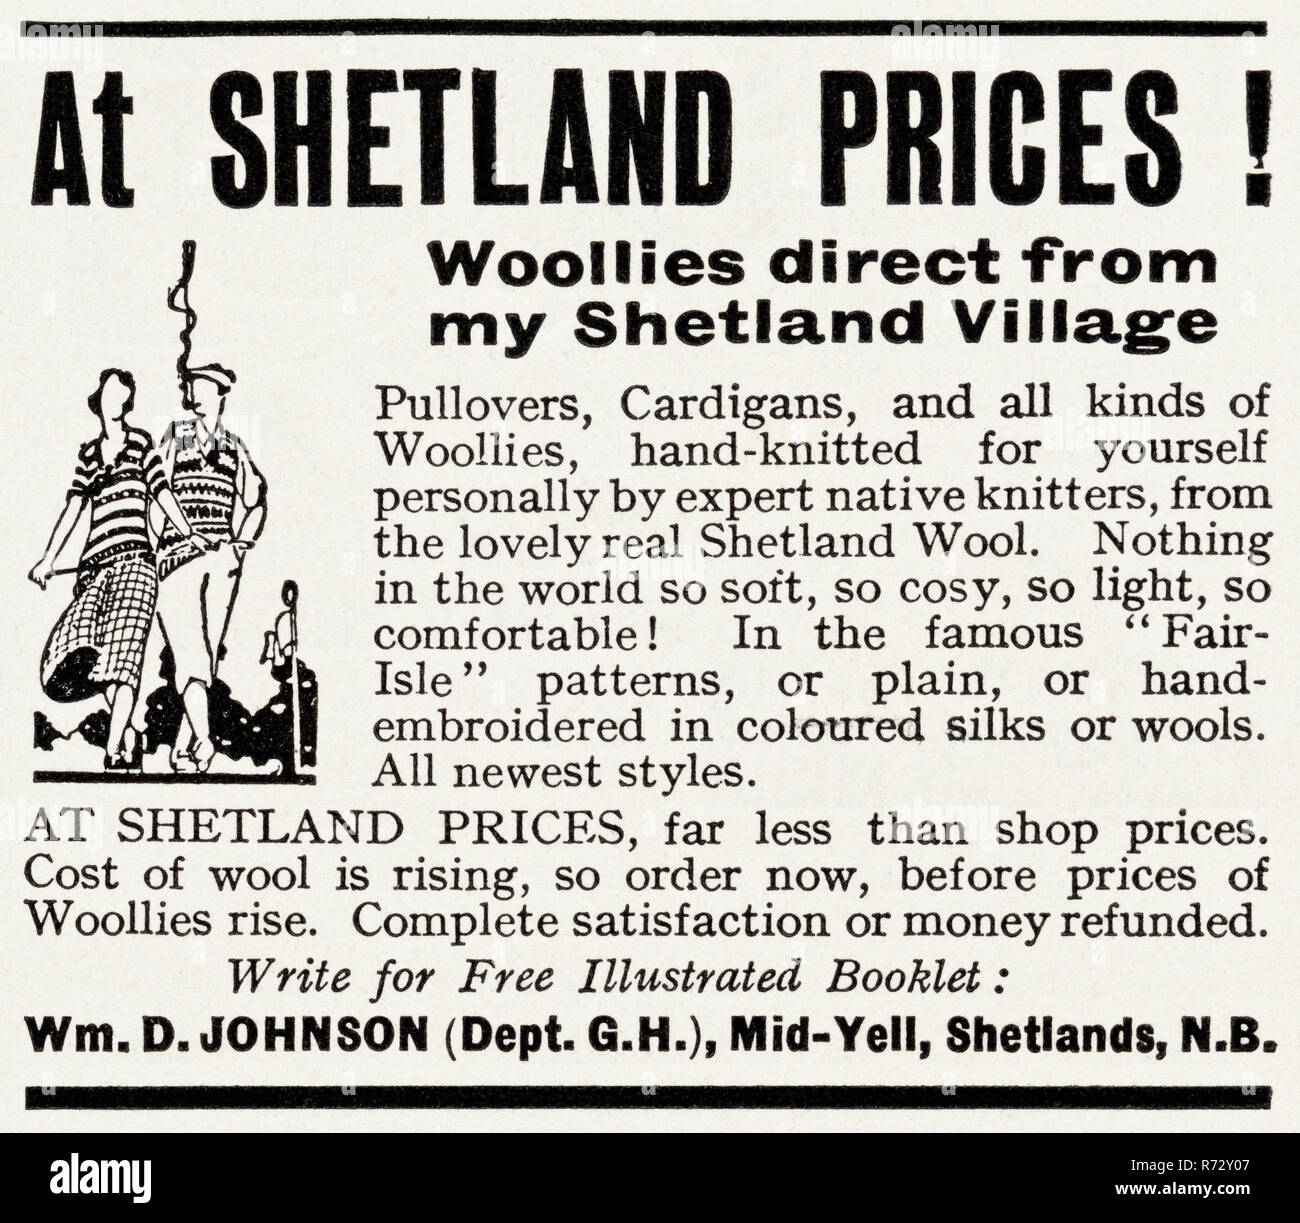 Original 30er Vintage alte drucken Werbung von 30 s englische Magazin Werbung Shetland woolen Strickwaren von William D Johnson von Mid-Yell Shetlandinseln Schottland Großbritannien ca. 1932 Stockfoto